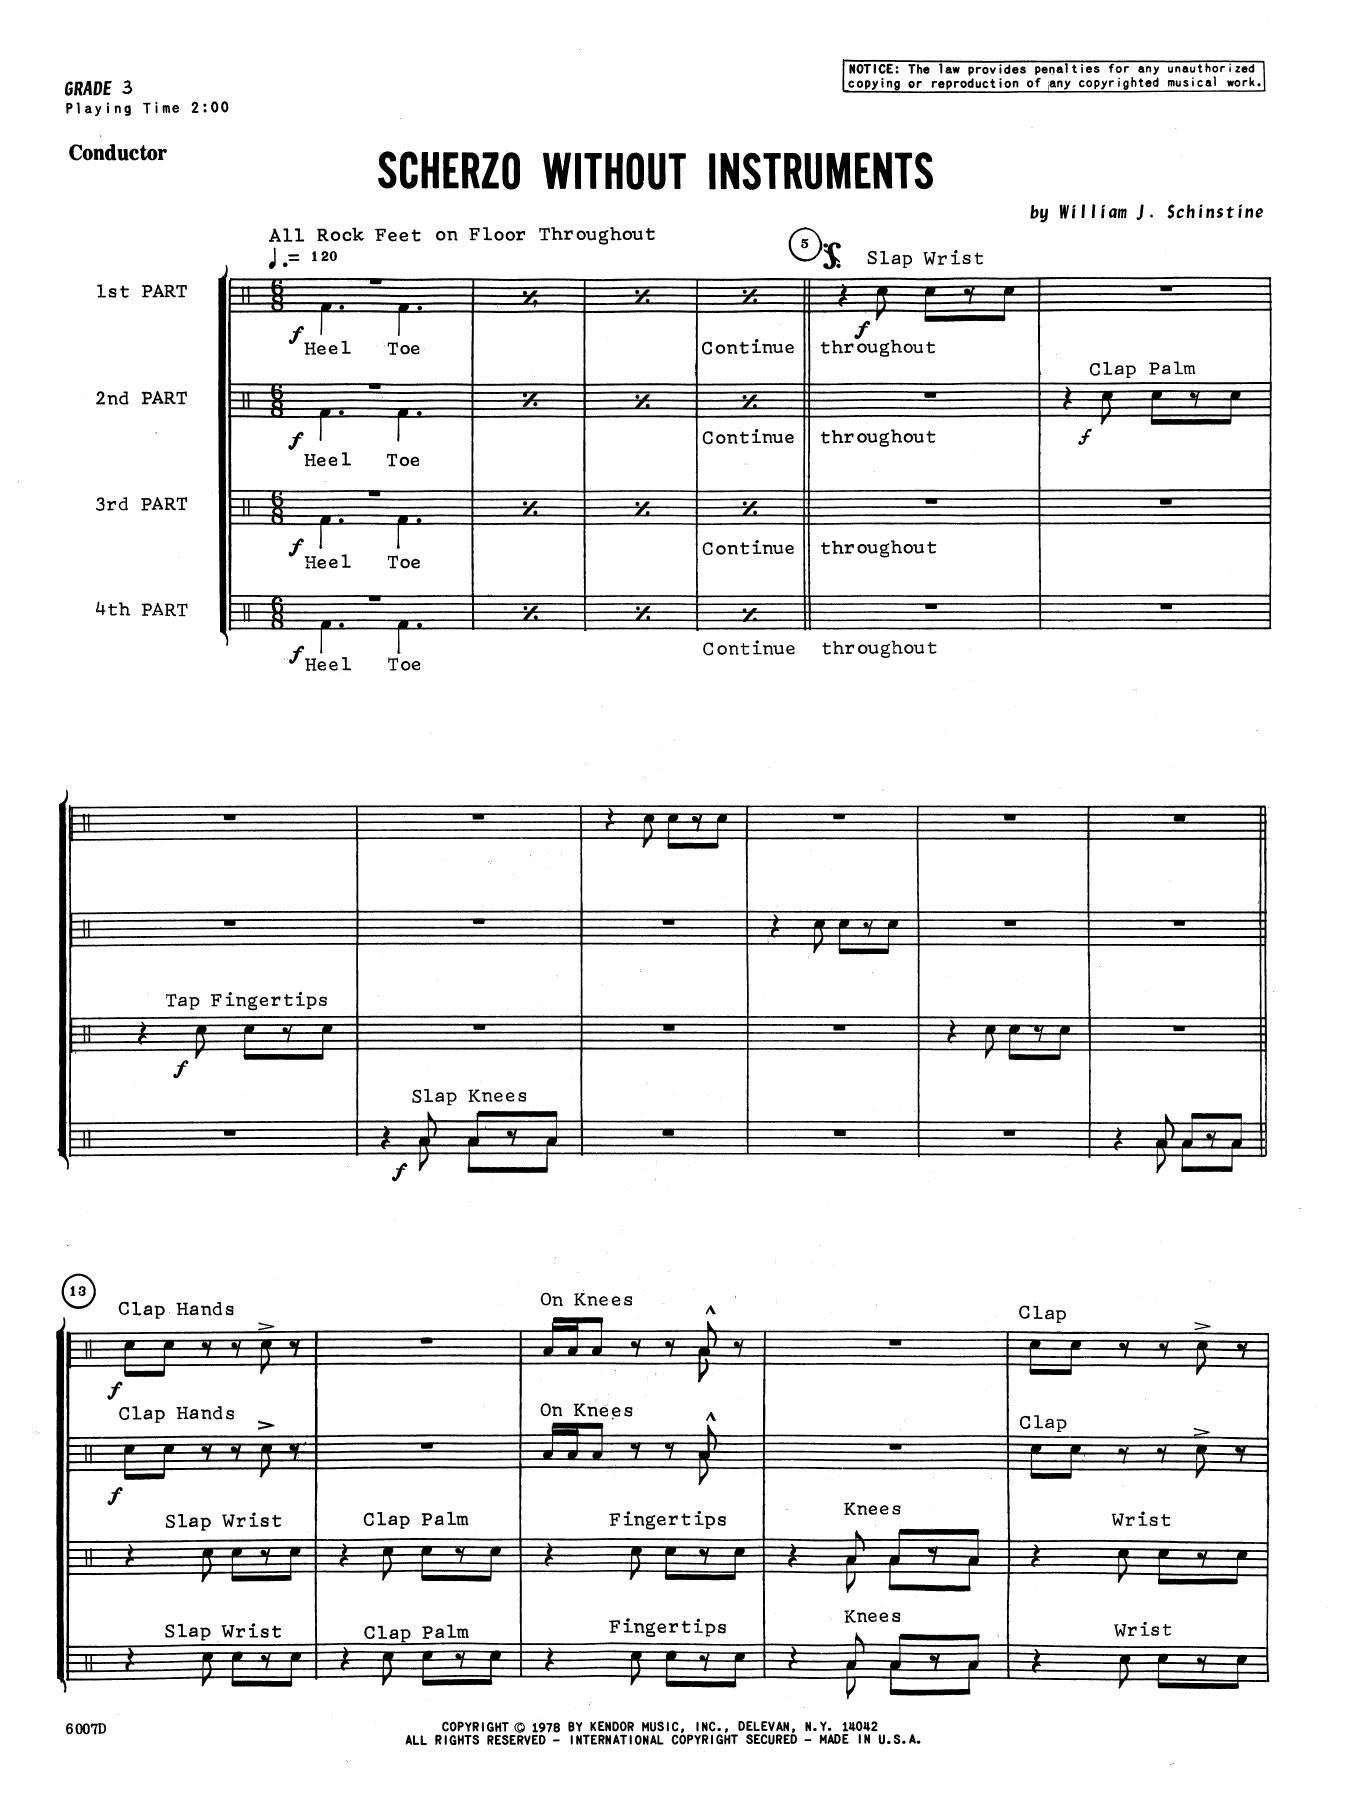 Download William Schinstine Scherzo Without Instruments - Full Scor Sheet Music